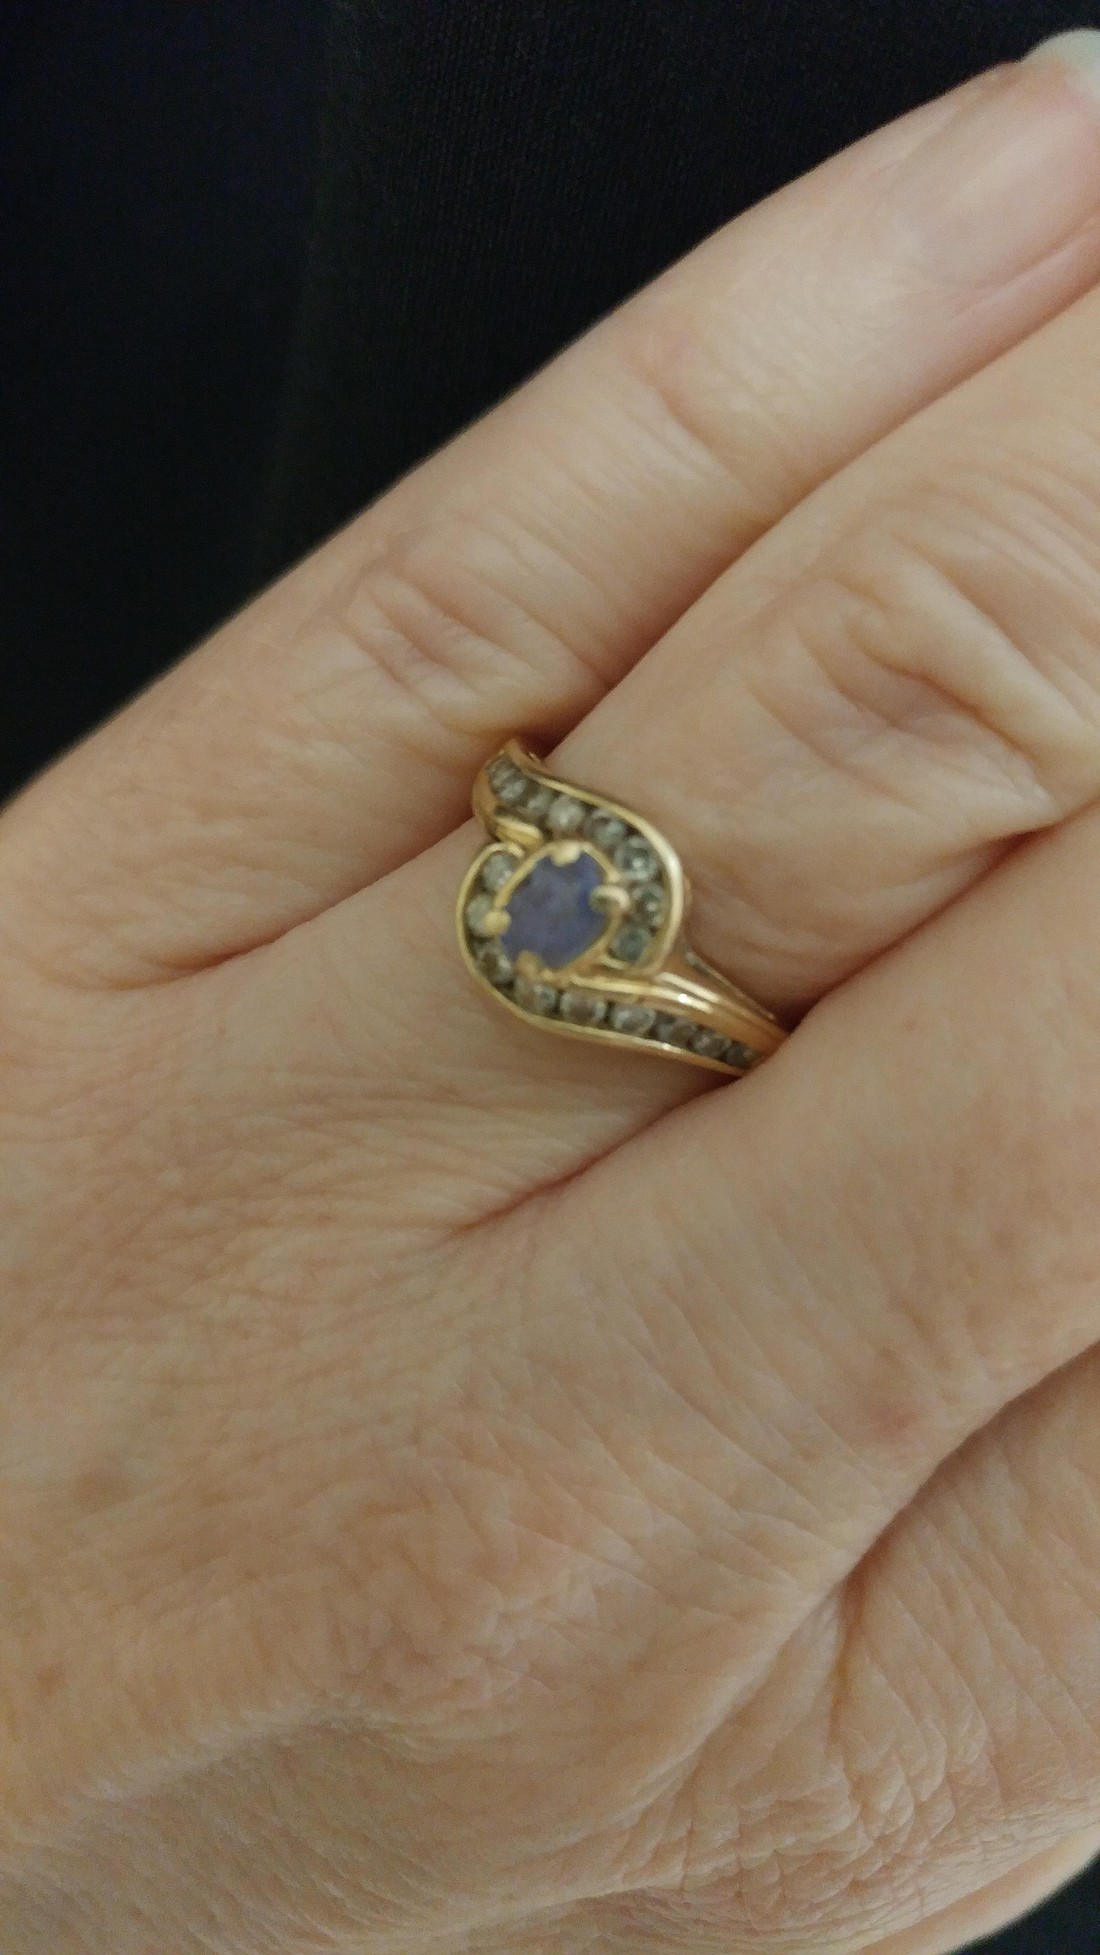 Carol's ring